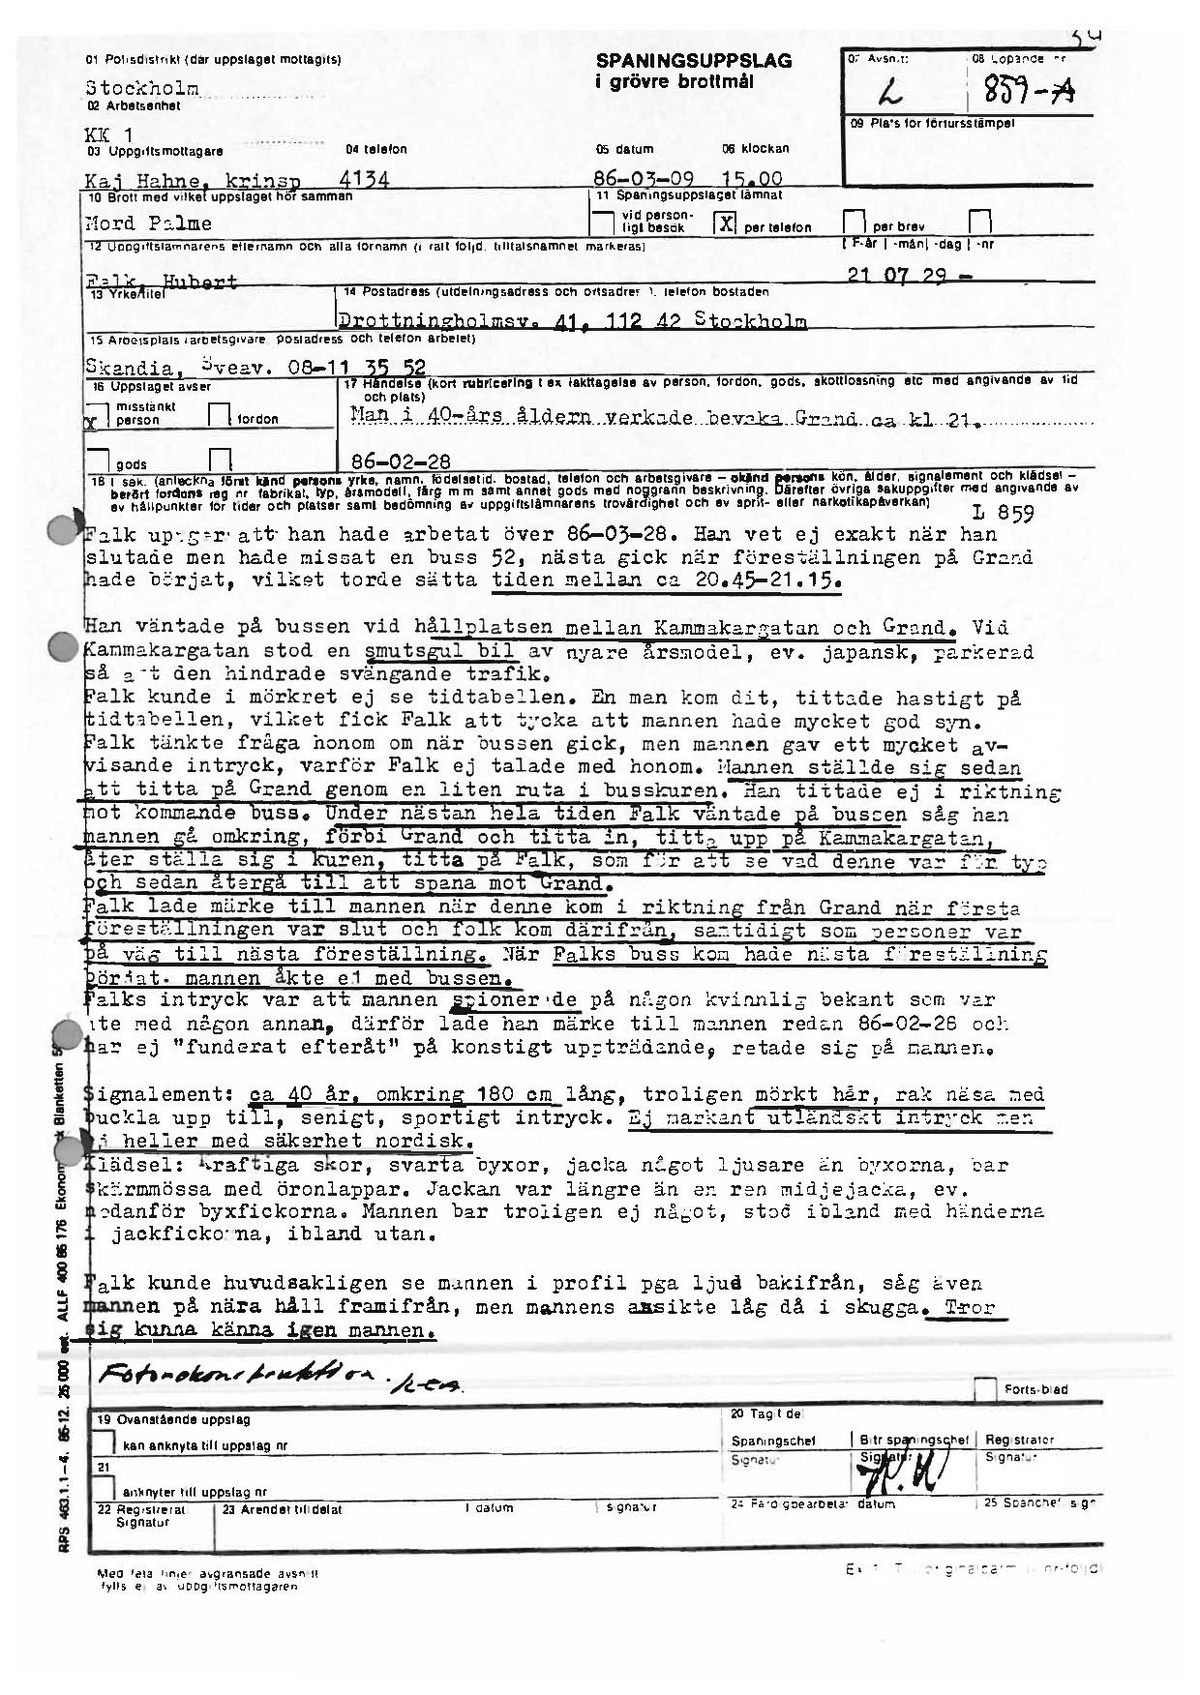 Pol-1986-03-09 1500 L859-00-A Förhör av Hubert Falk om misstänkt man utanför Grand.pdf